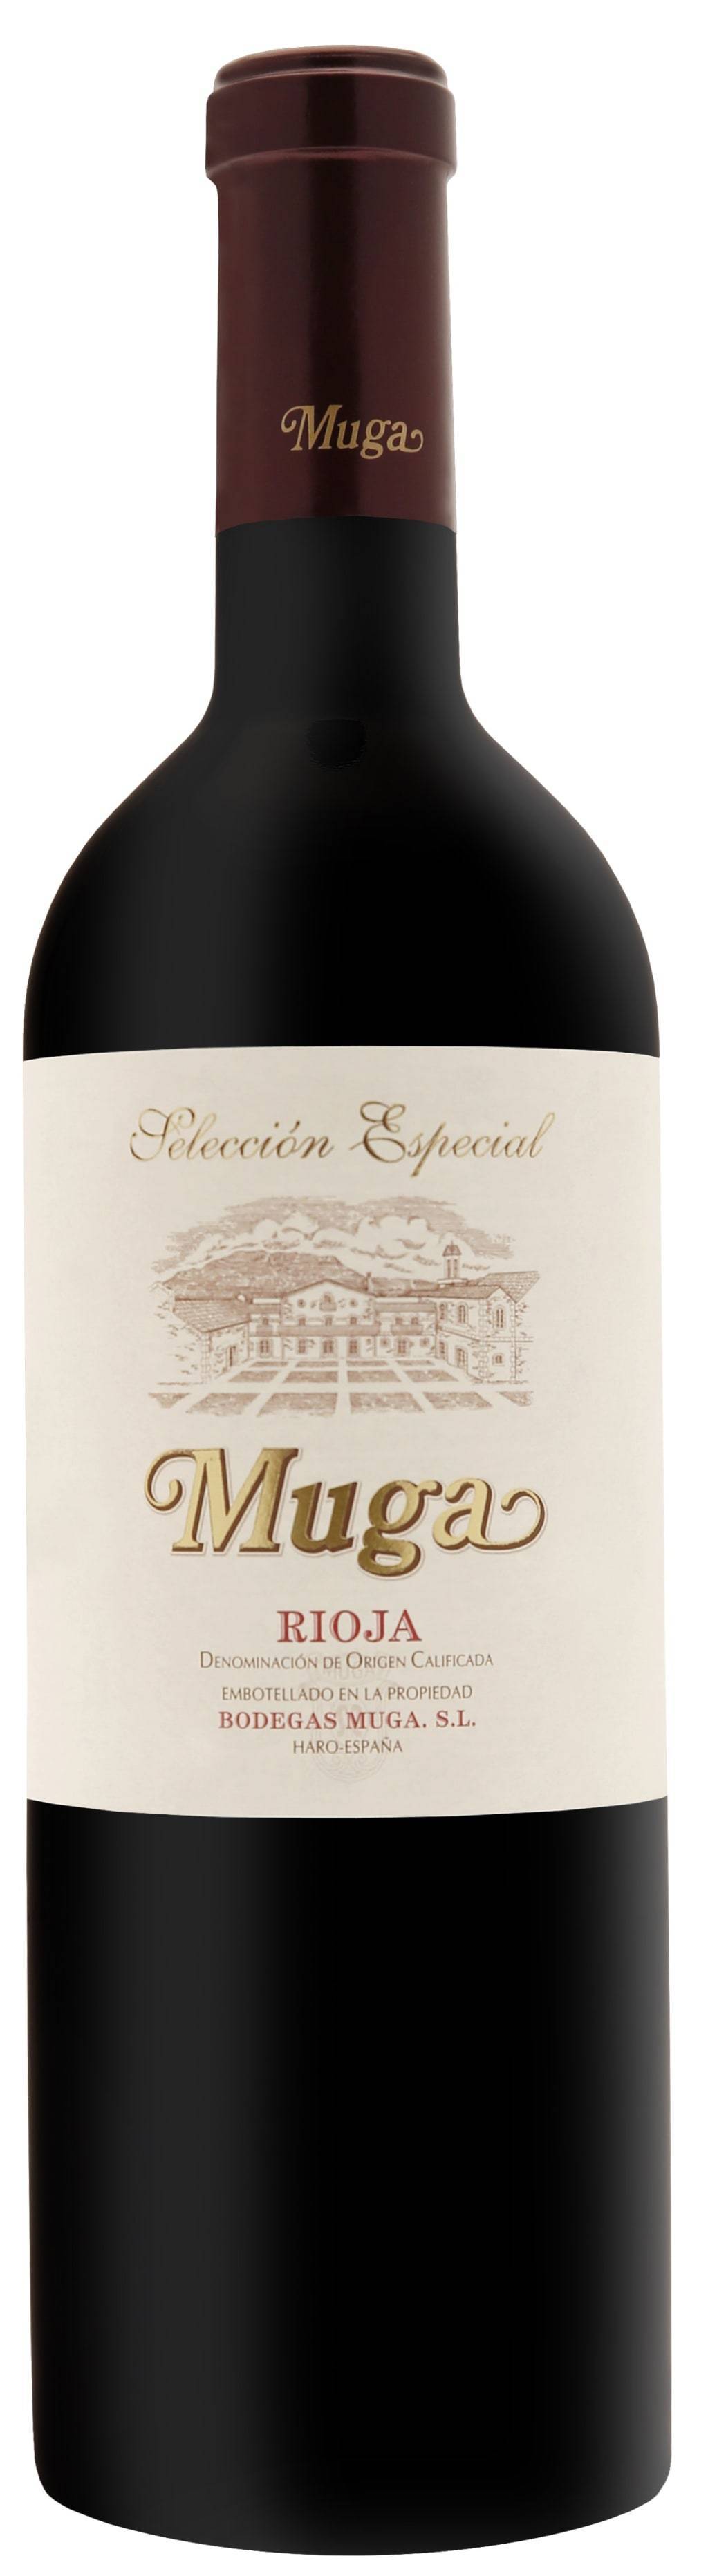 Bodegas Muga Rioja Reserva Seleccion Especial 2014